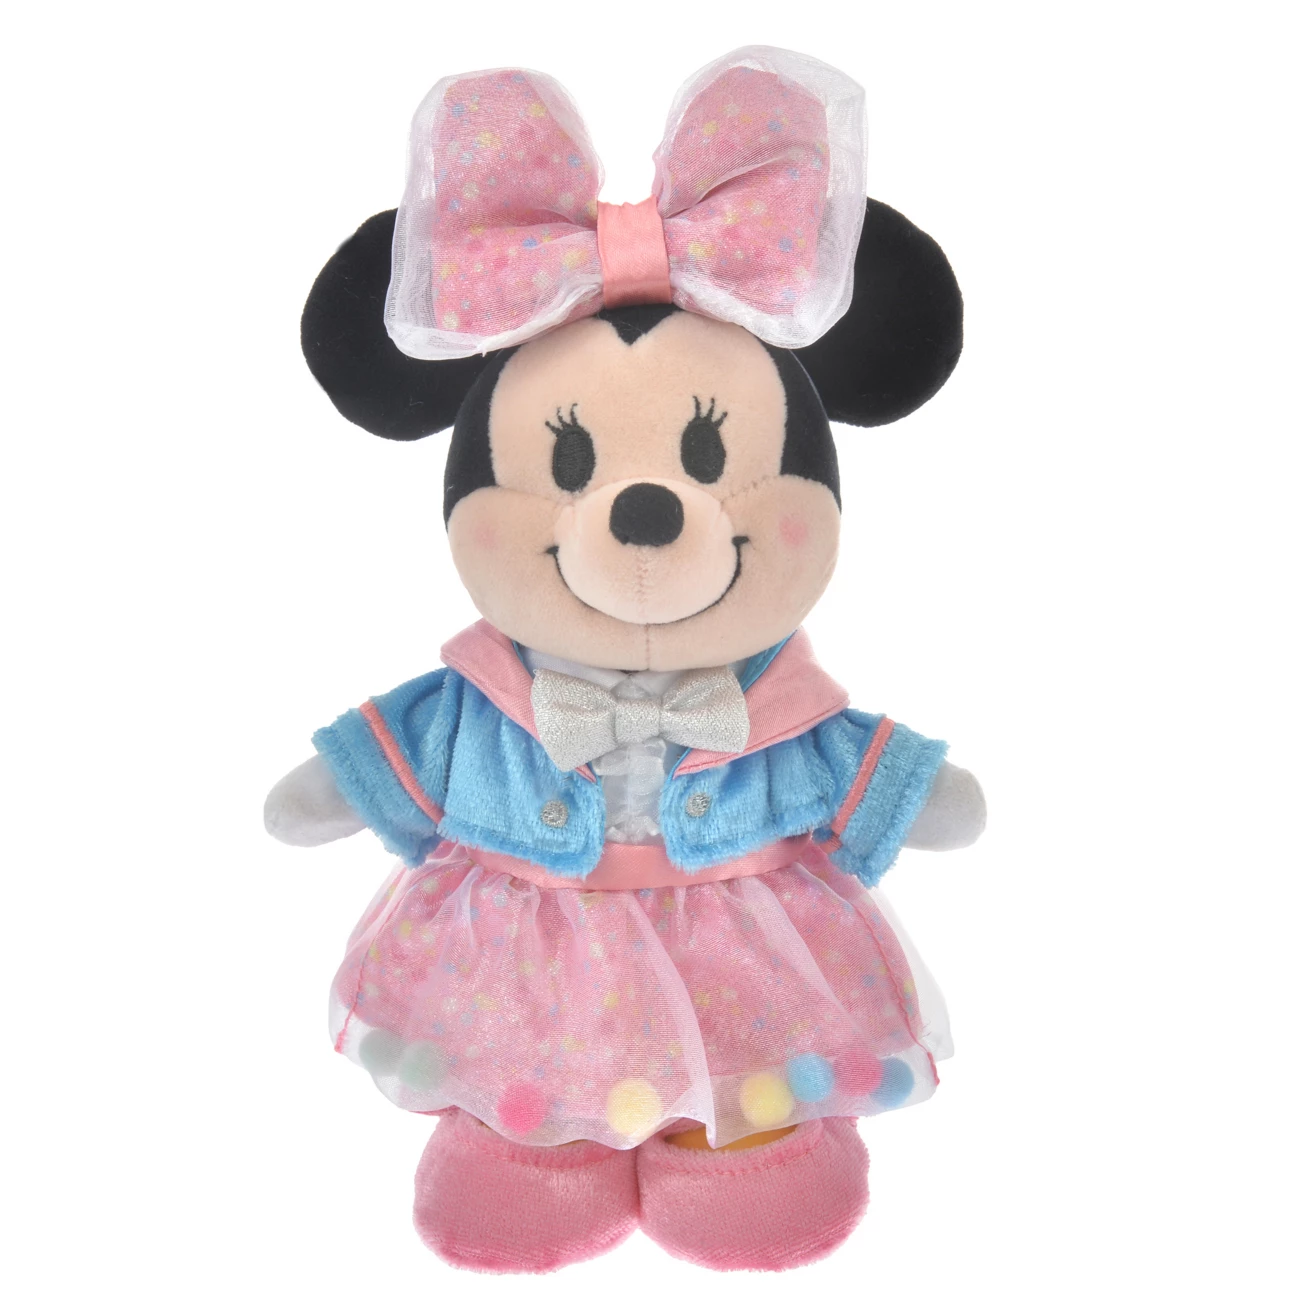 SDJ - Disney Store Japan 30TH Anniversary - NuiMos outfit